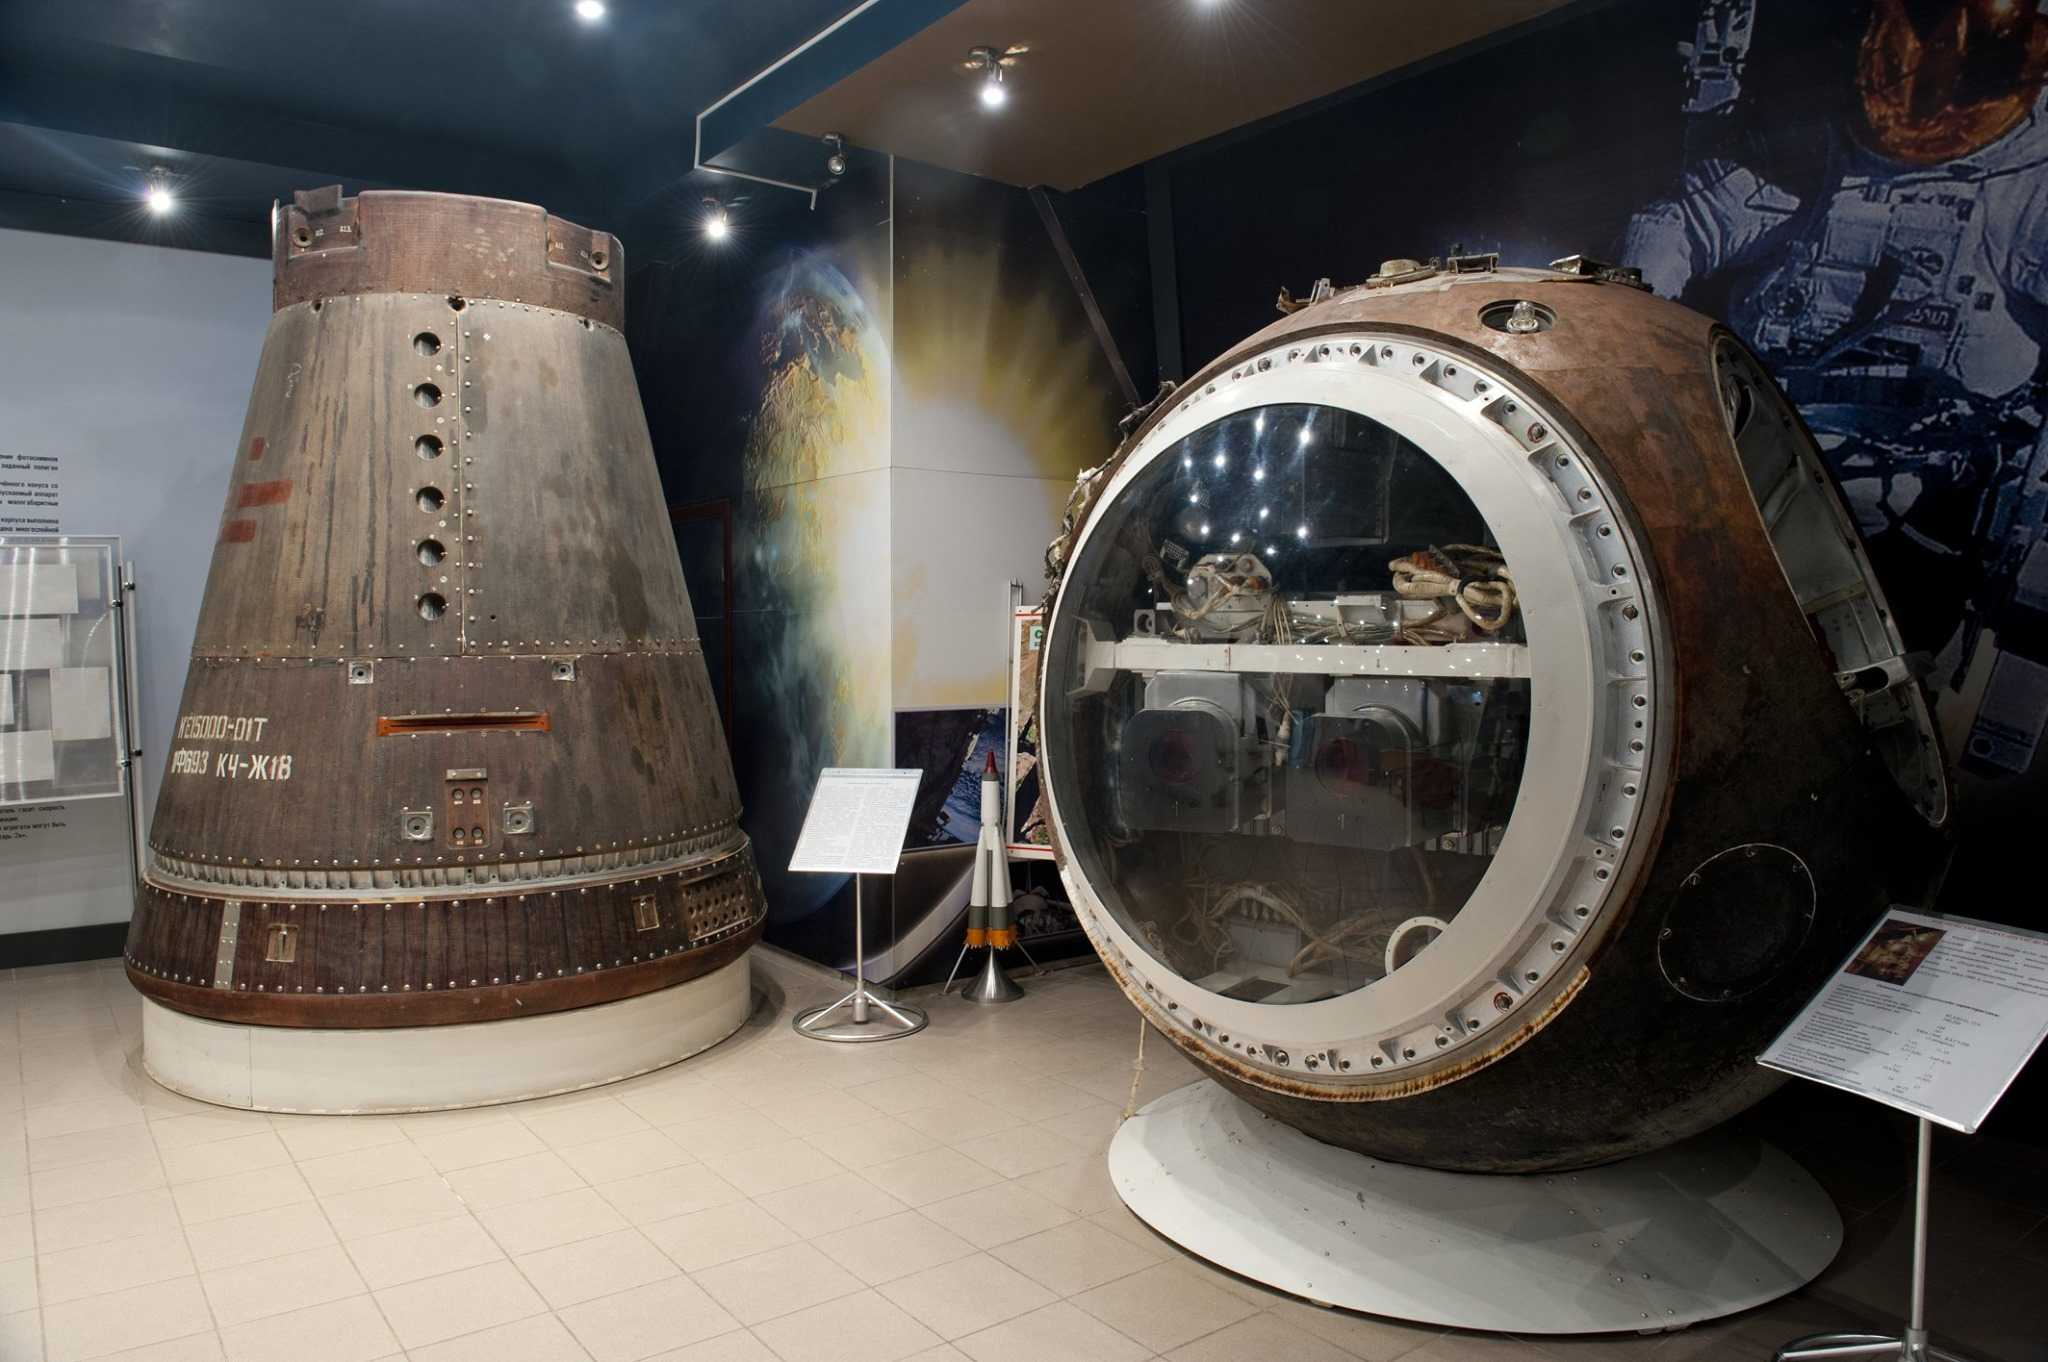 ракета музей самара